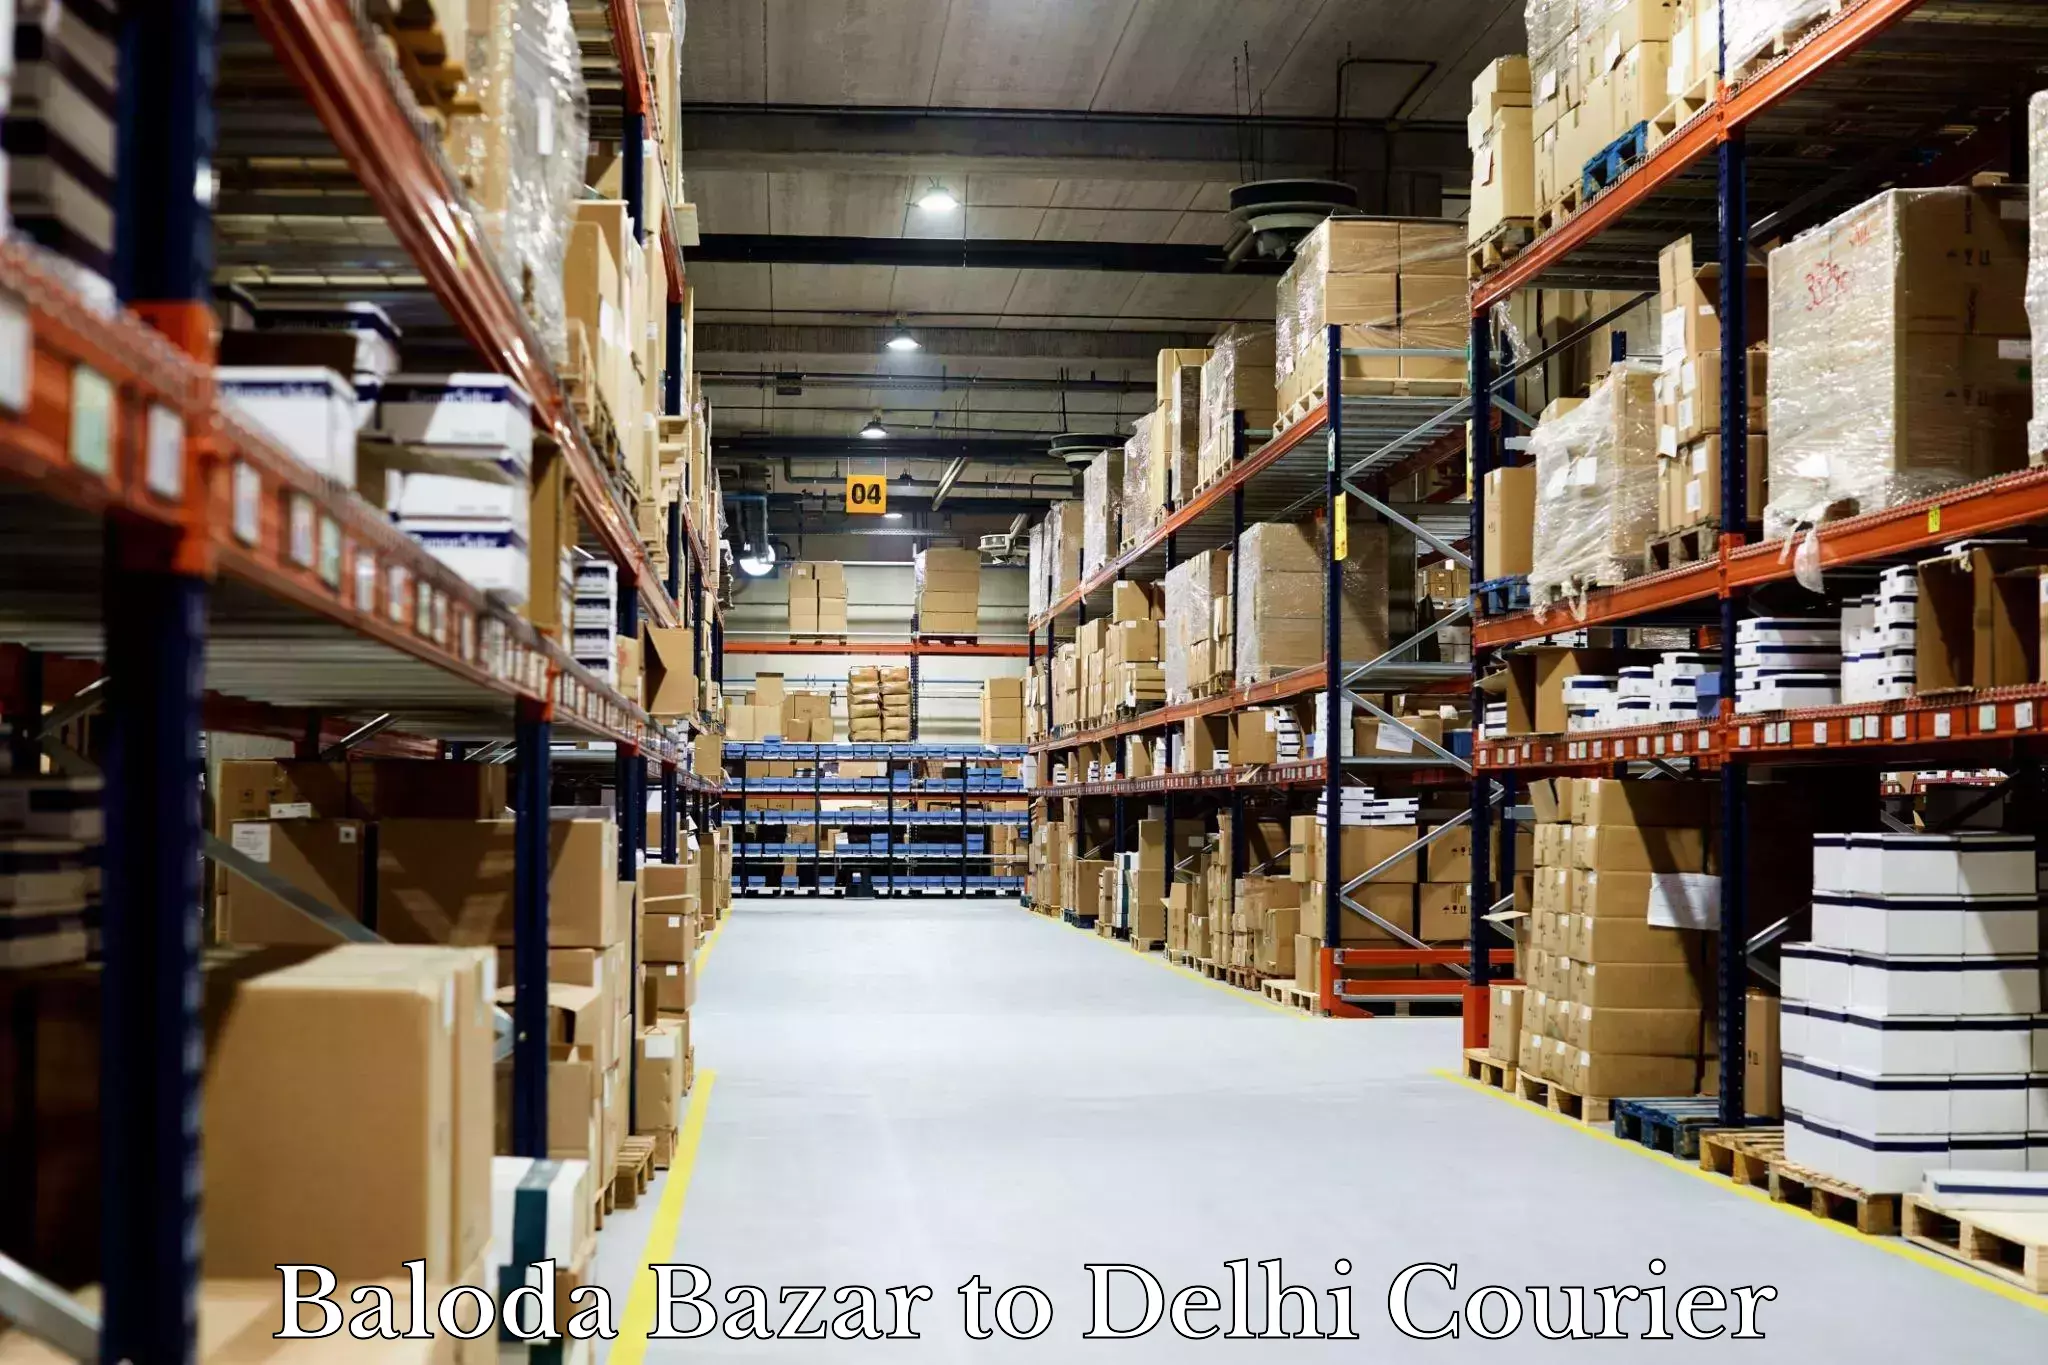 Nationwide parcel services Baloda Bazar to Ashok Vihar